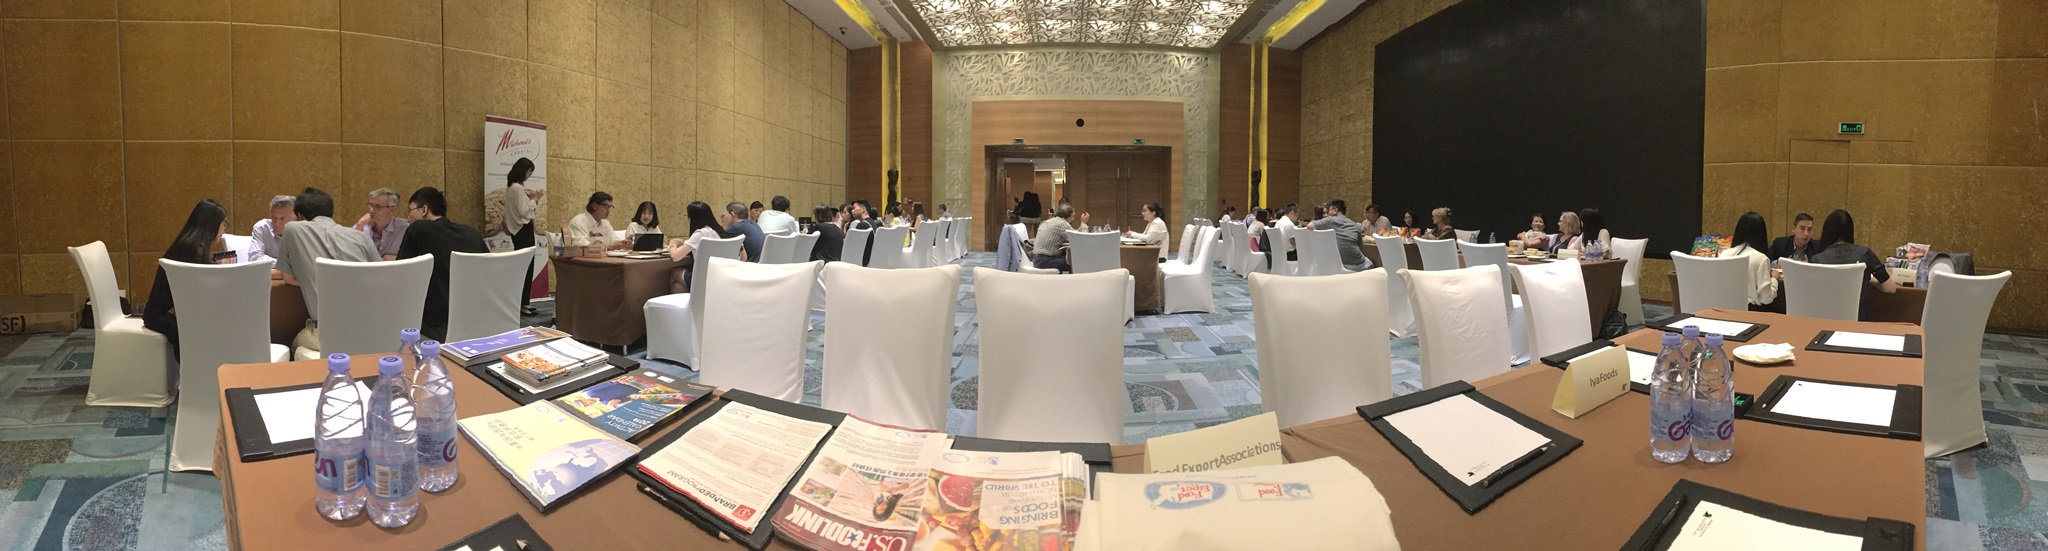 Shenzhen Meeting Room